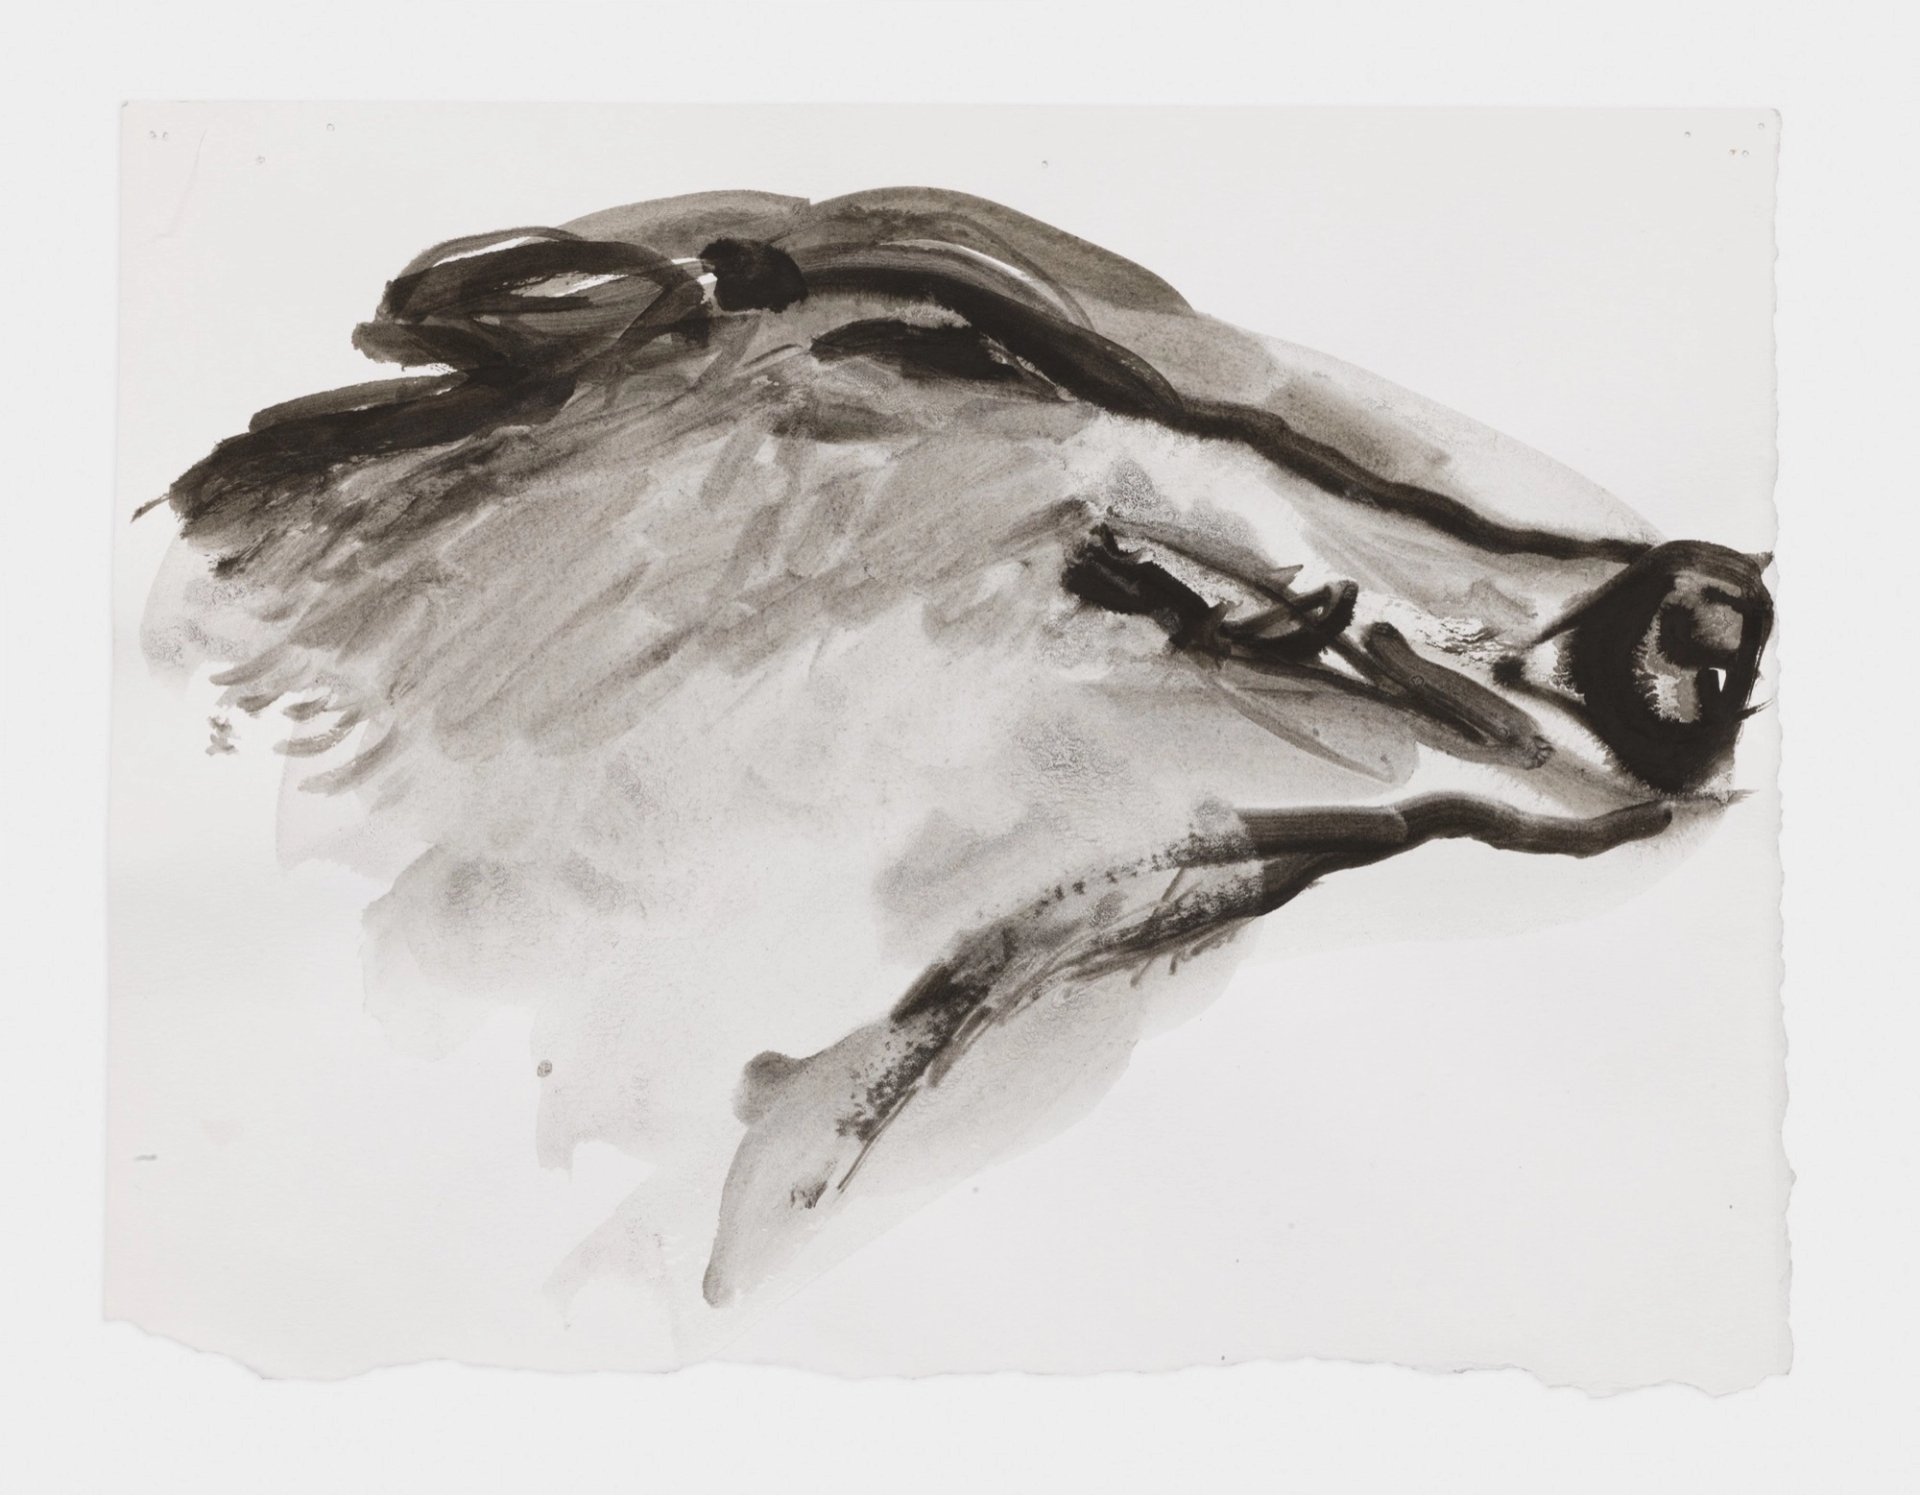 Marlene Dumas 'The boar smiles,' 2015-2016 Ink wash on paper Image courtesy of David Zwirner